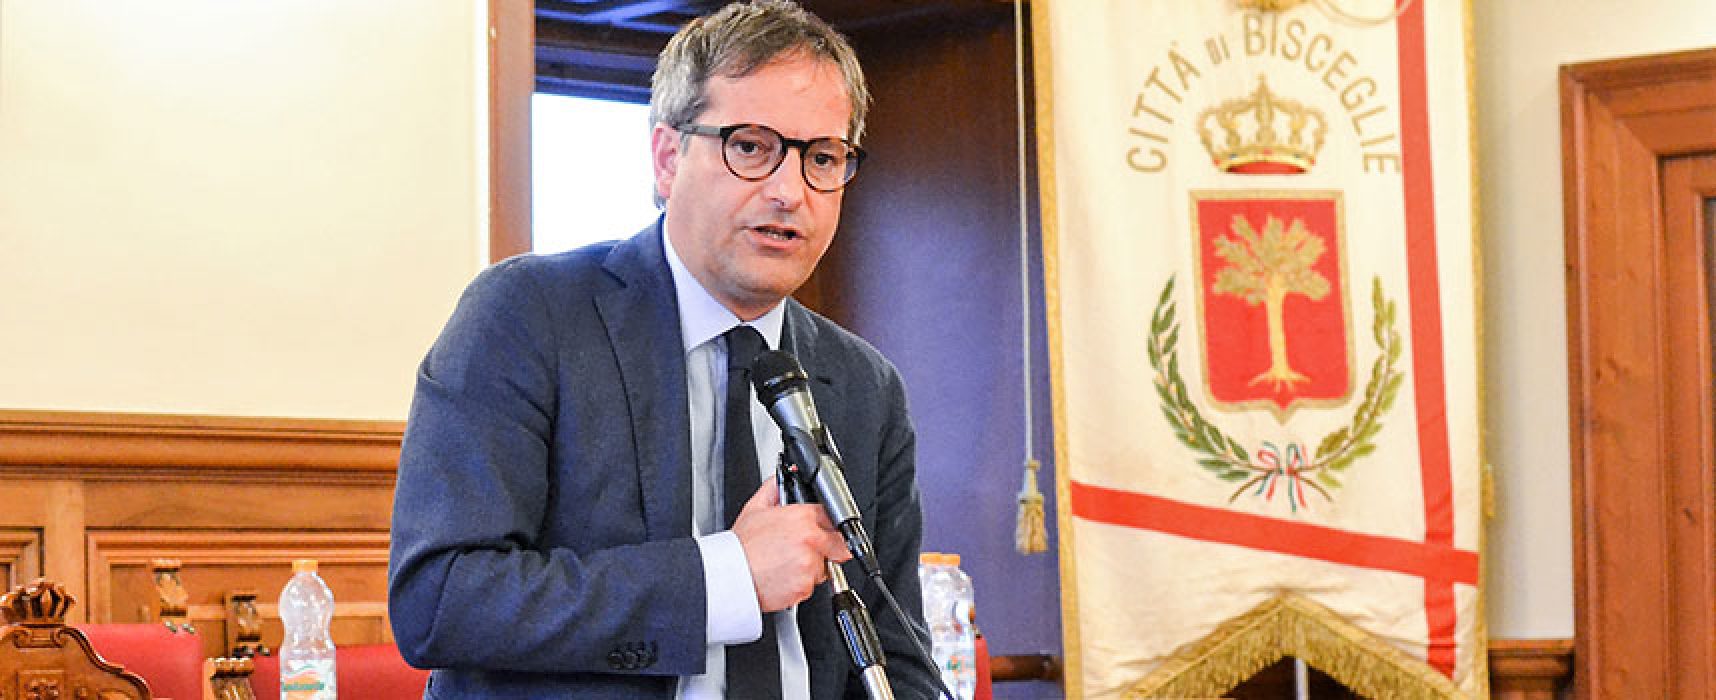 Solidarietà del sindaco Angarano a Francesco Boccia: “Ferma condanna per simili atti”